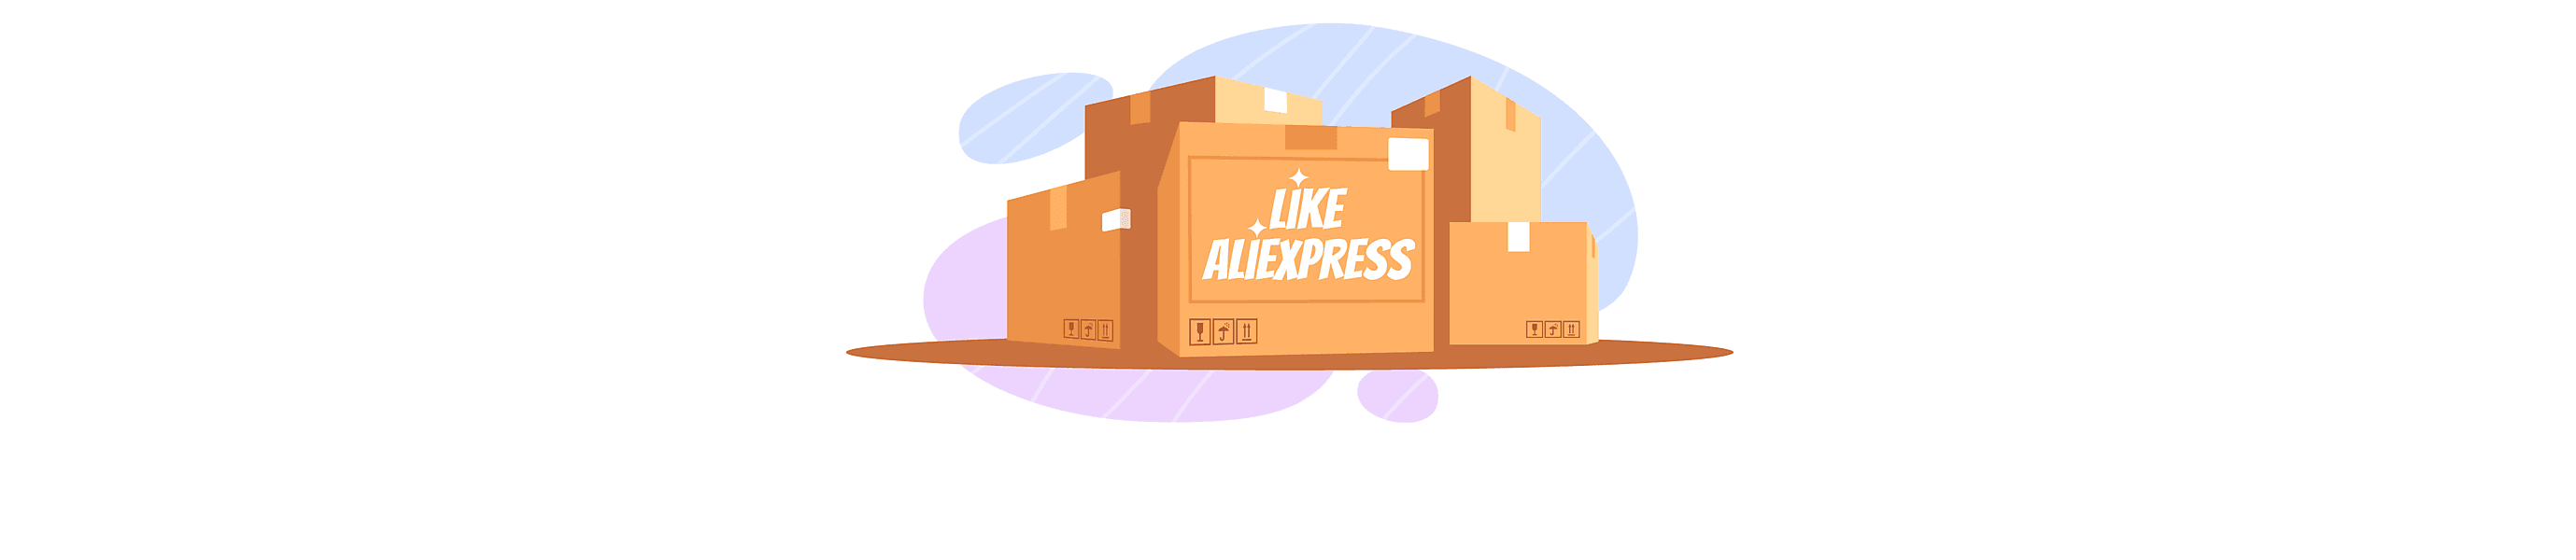 How to Make a Website like AliExpress?